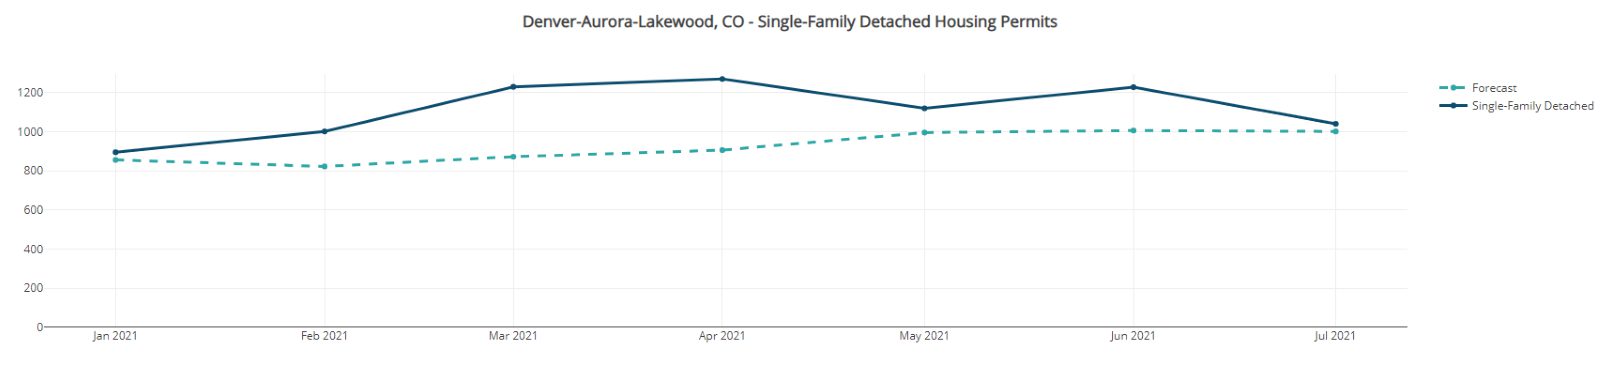 Denver - Aurora - Lakewood Single-Family Housing Permits-Front Range Housing Market September, 2021